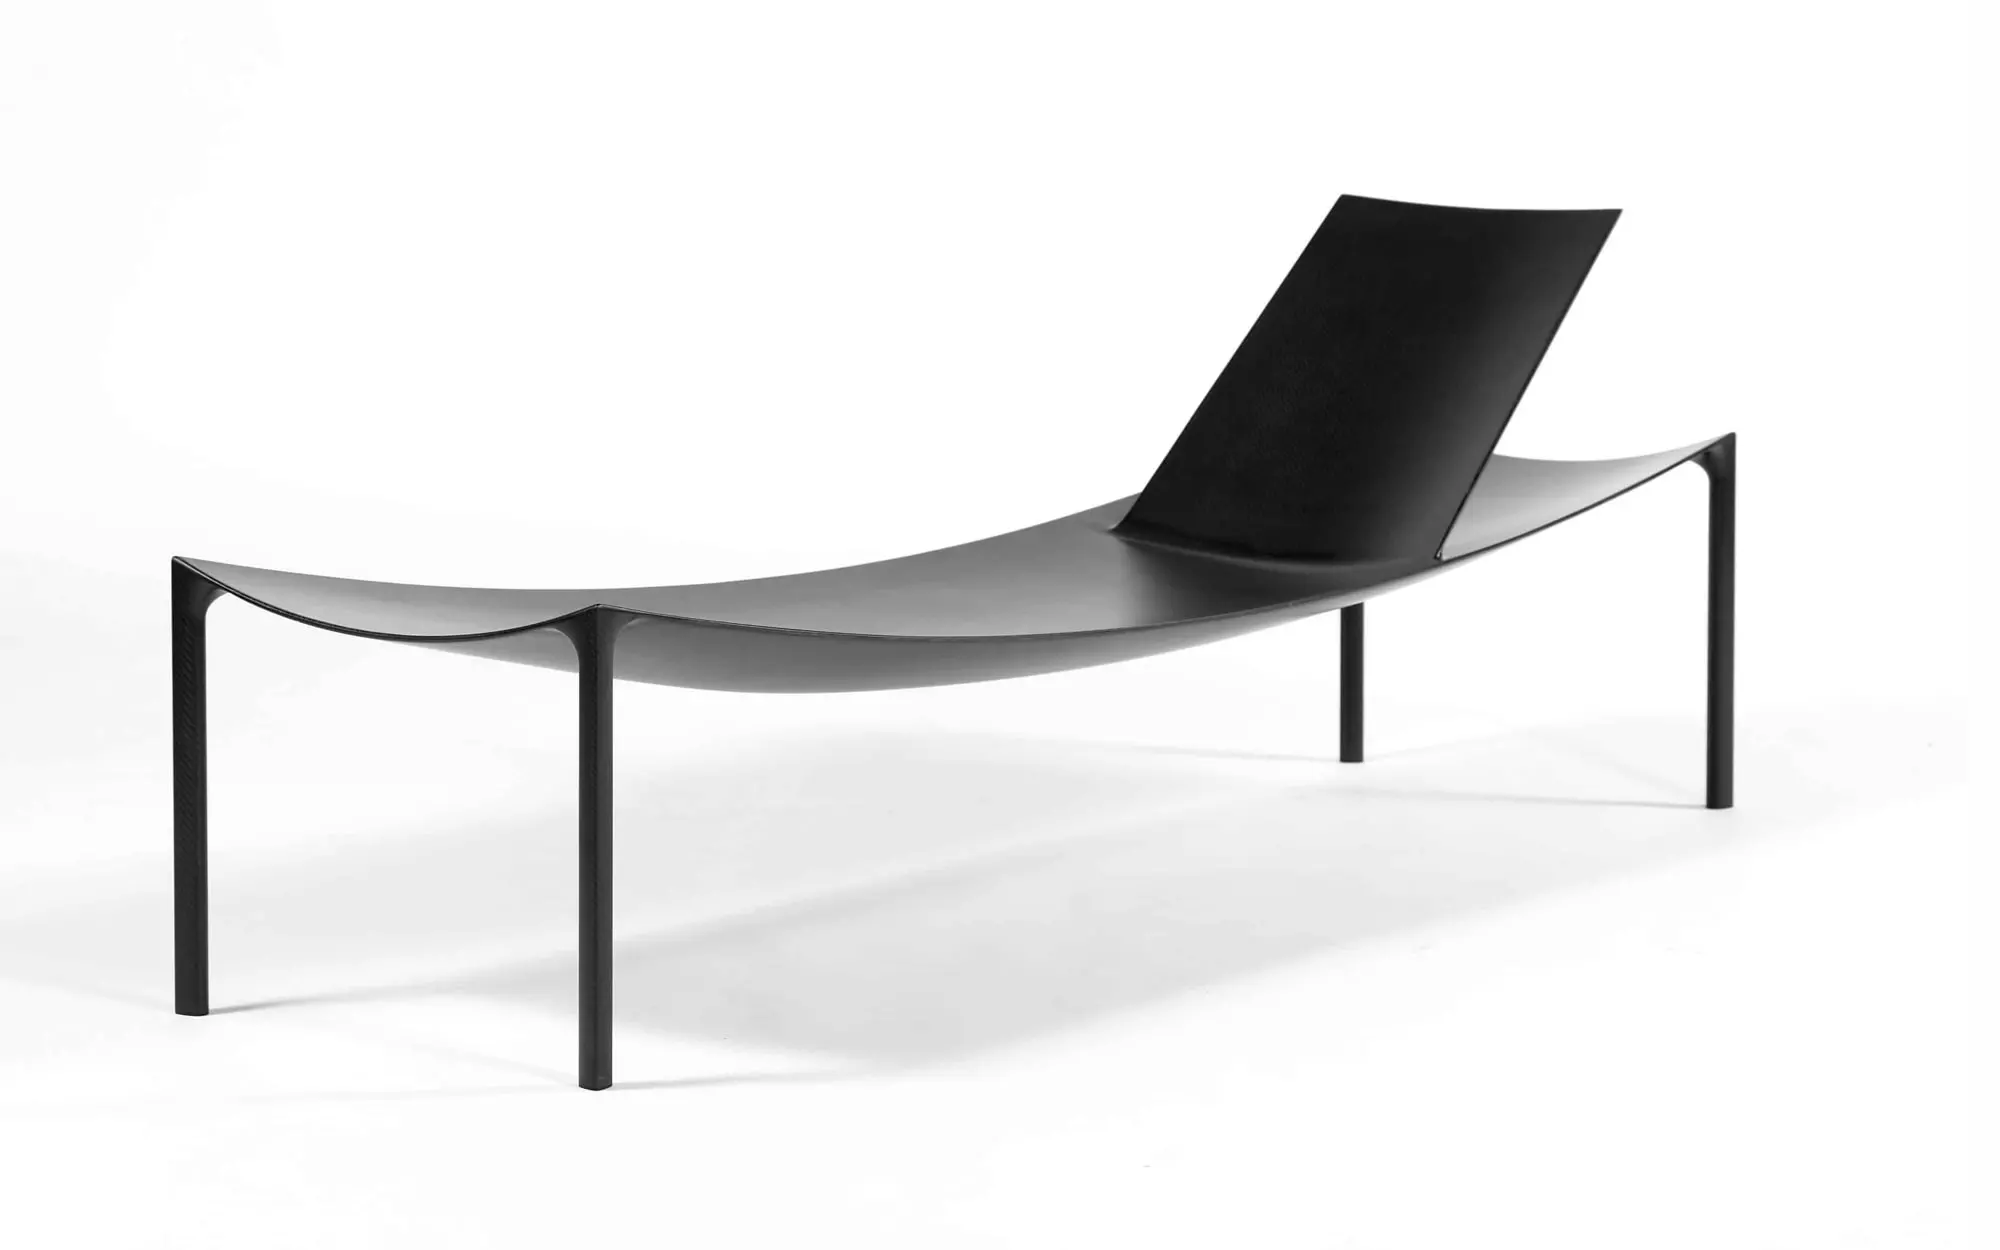 Karbon Lounge Chair - Konstantin Grcic - Mirror - Galerie kreo